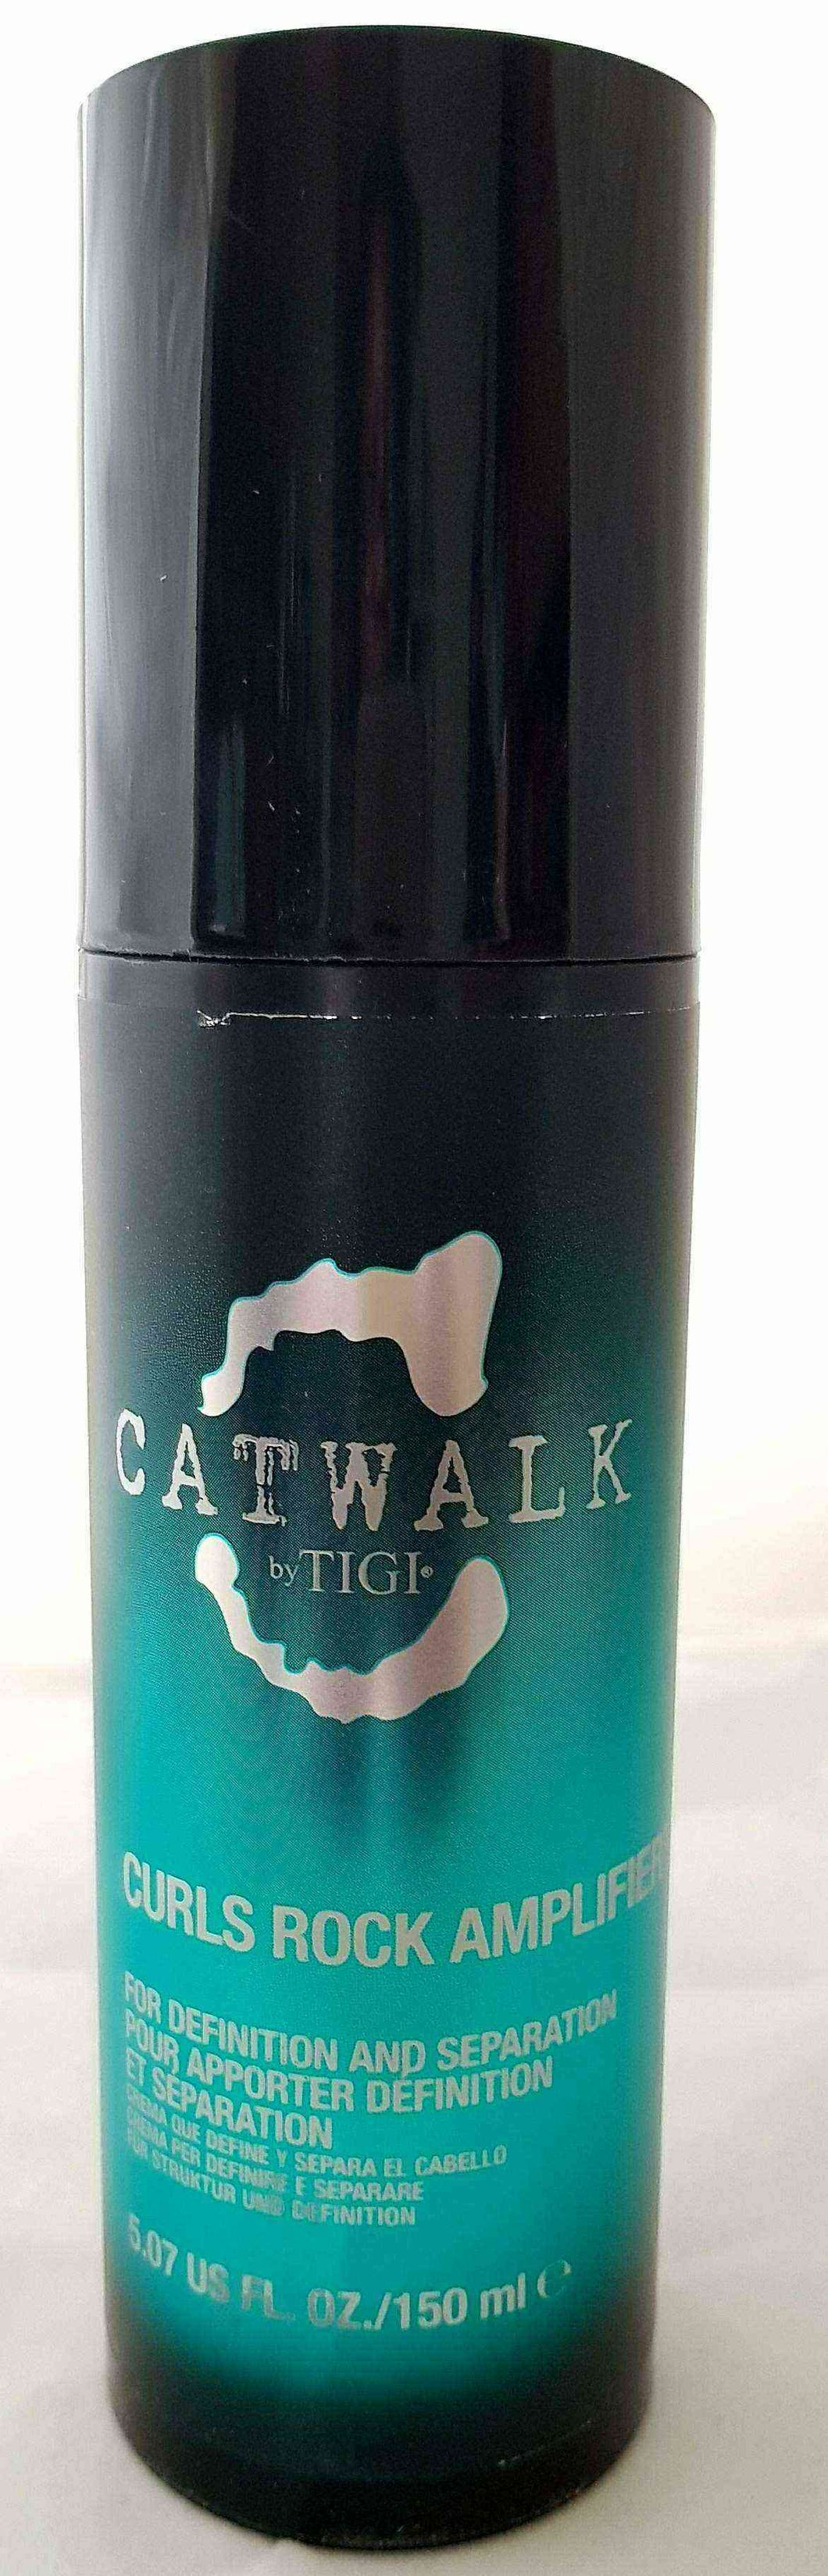 Tigi Catwalk Curls Rock Amplifier Styling Crème ml) – Lions Mane Enterprises Ltd -